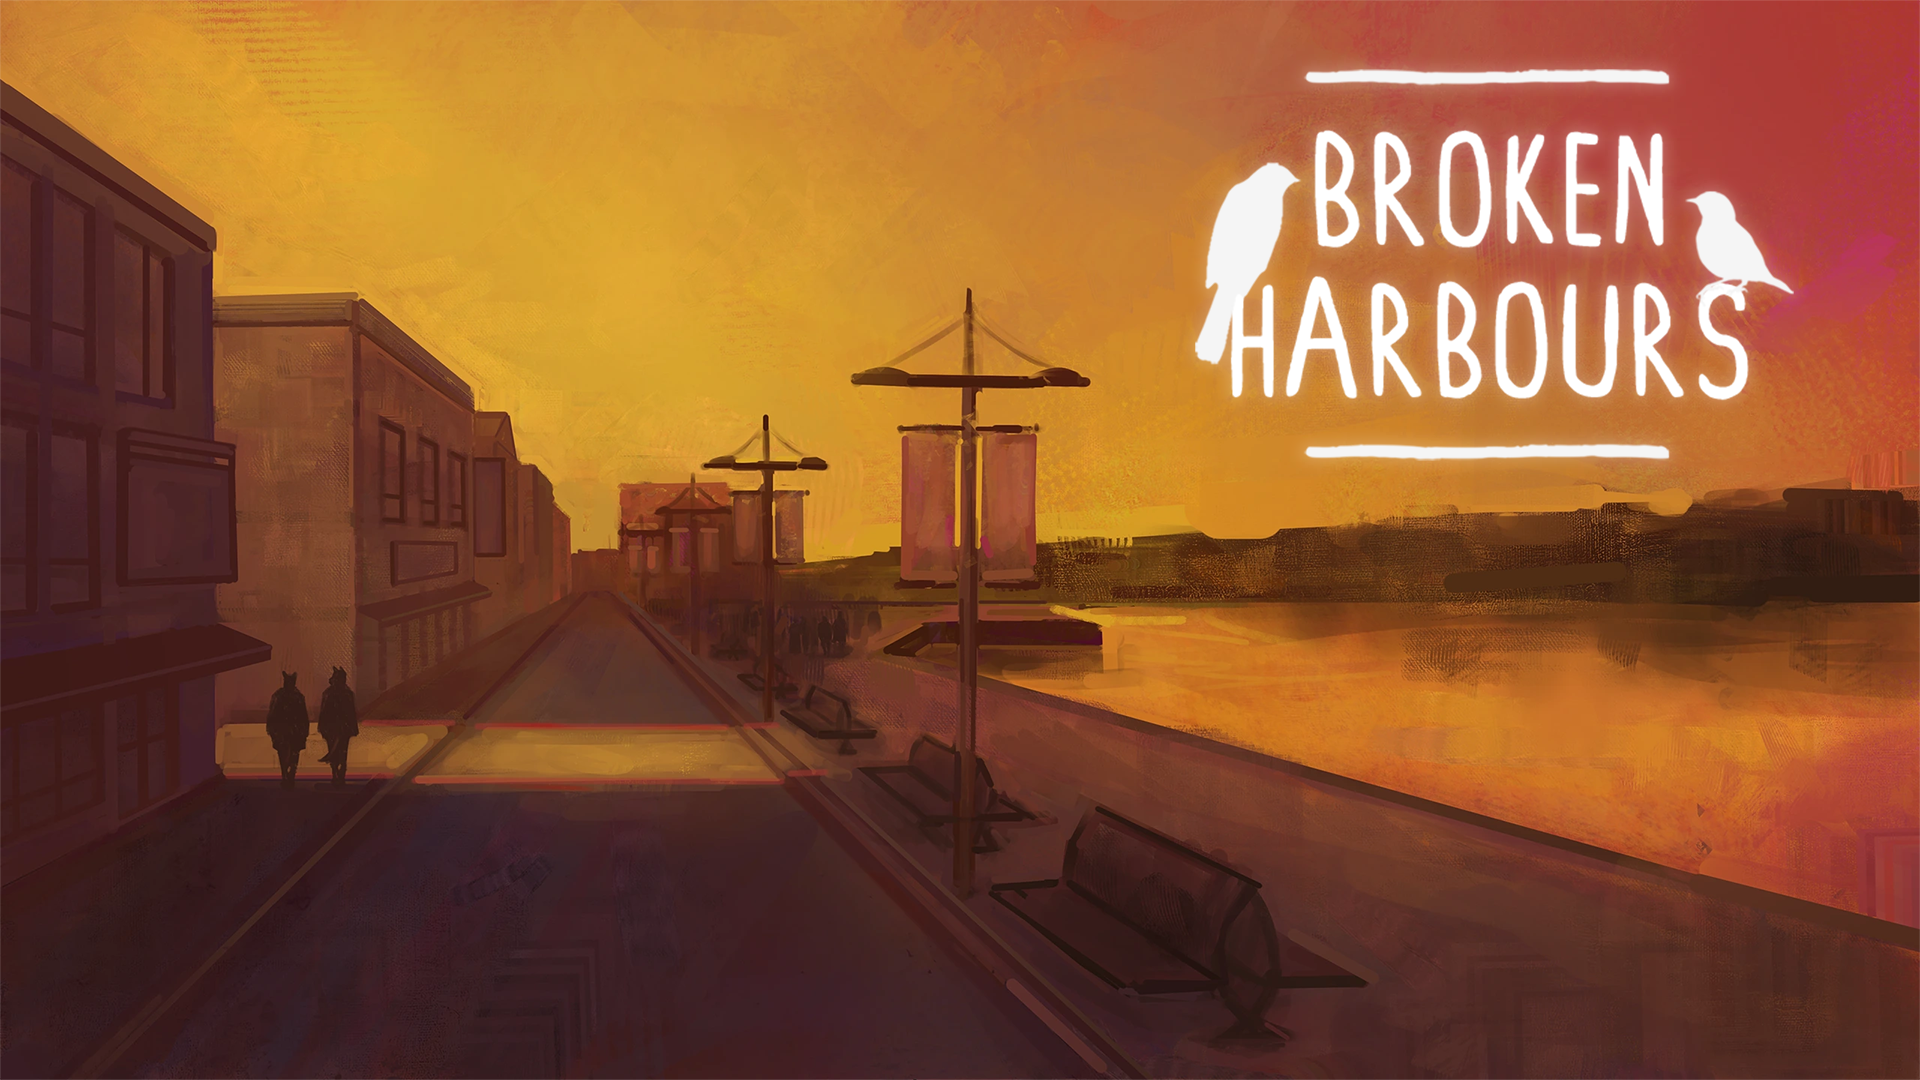 Broken Harbours